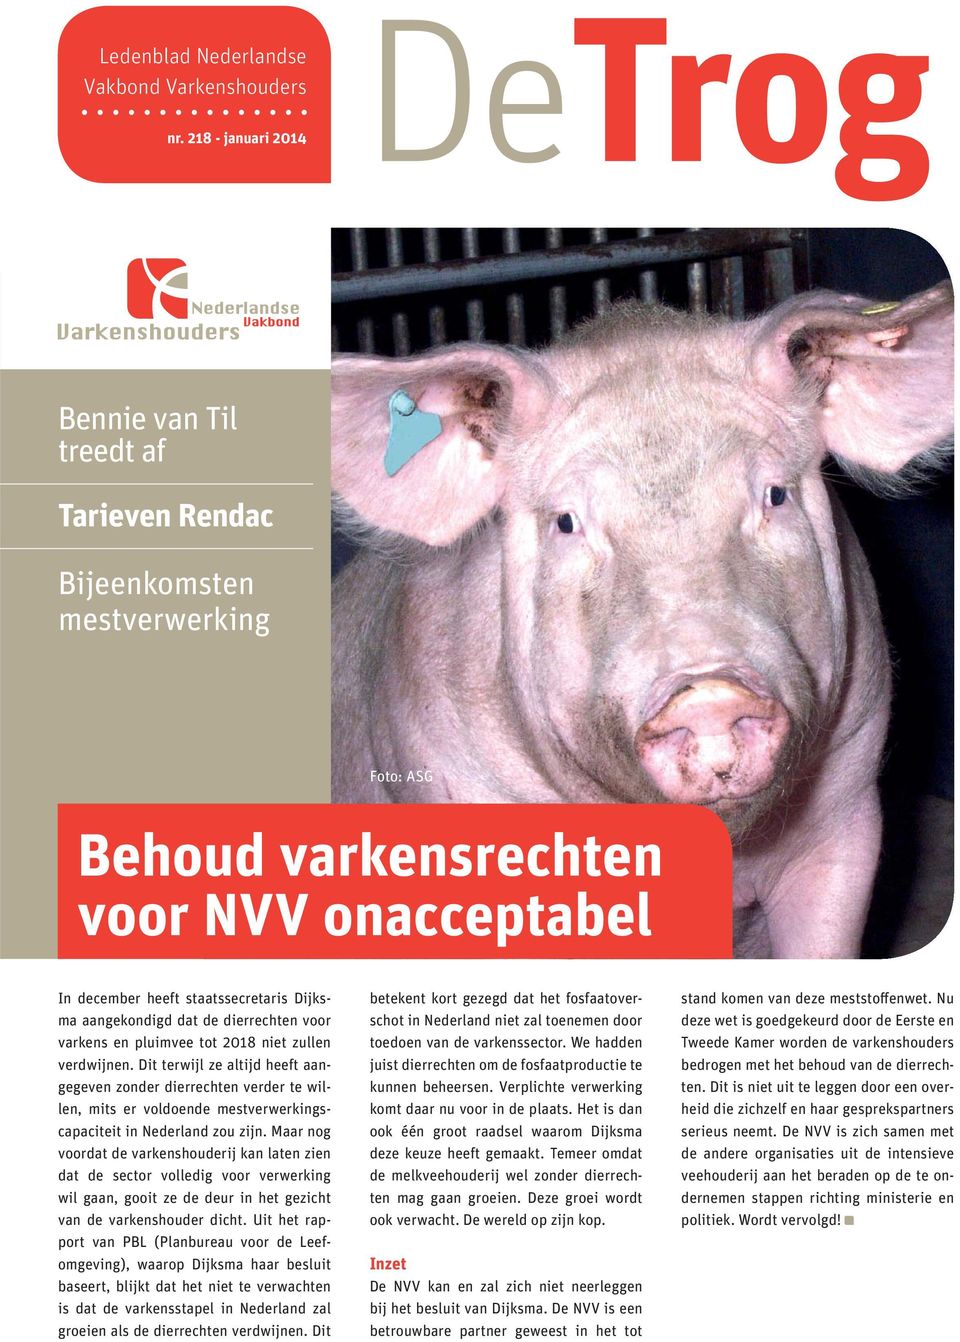 dat de dierrechten voor varkens en pluimvee tot 2018 niet zullen verdwijnen.